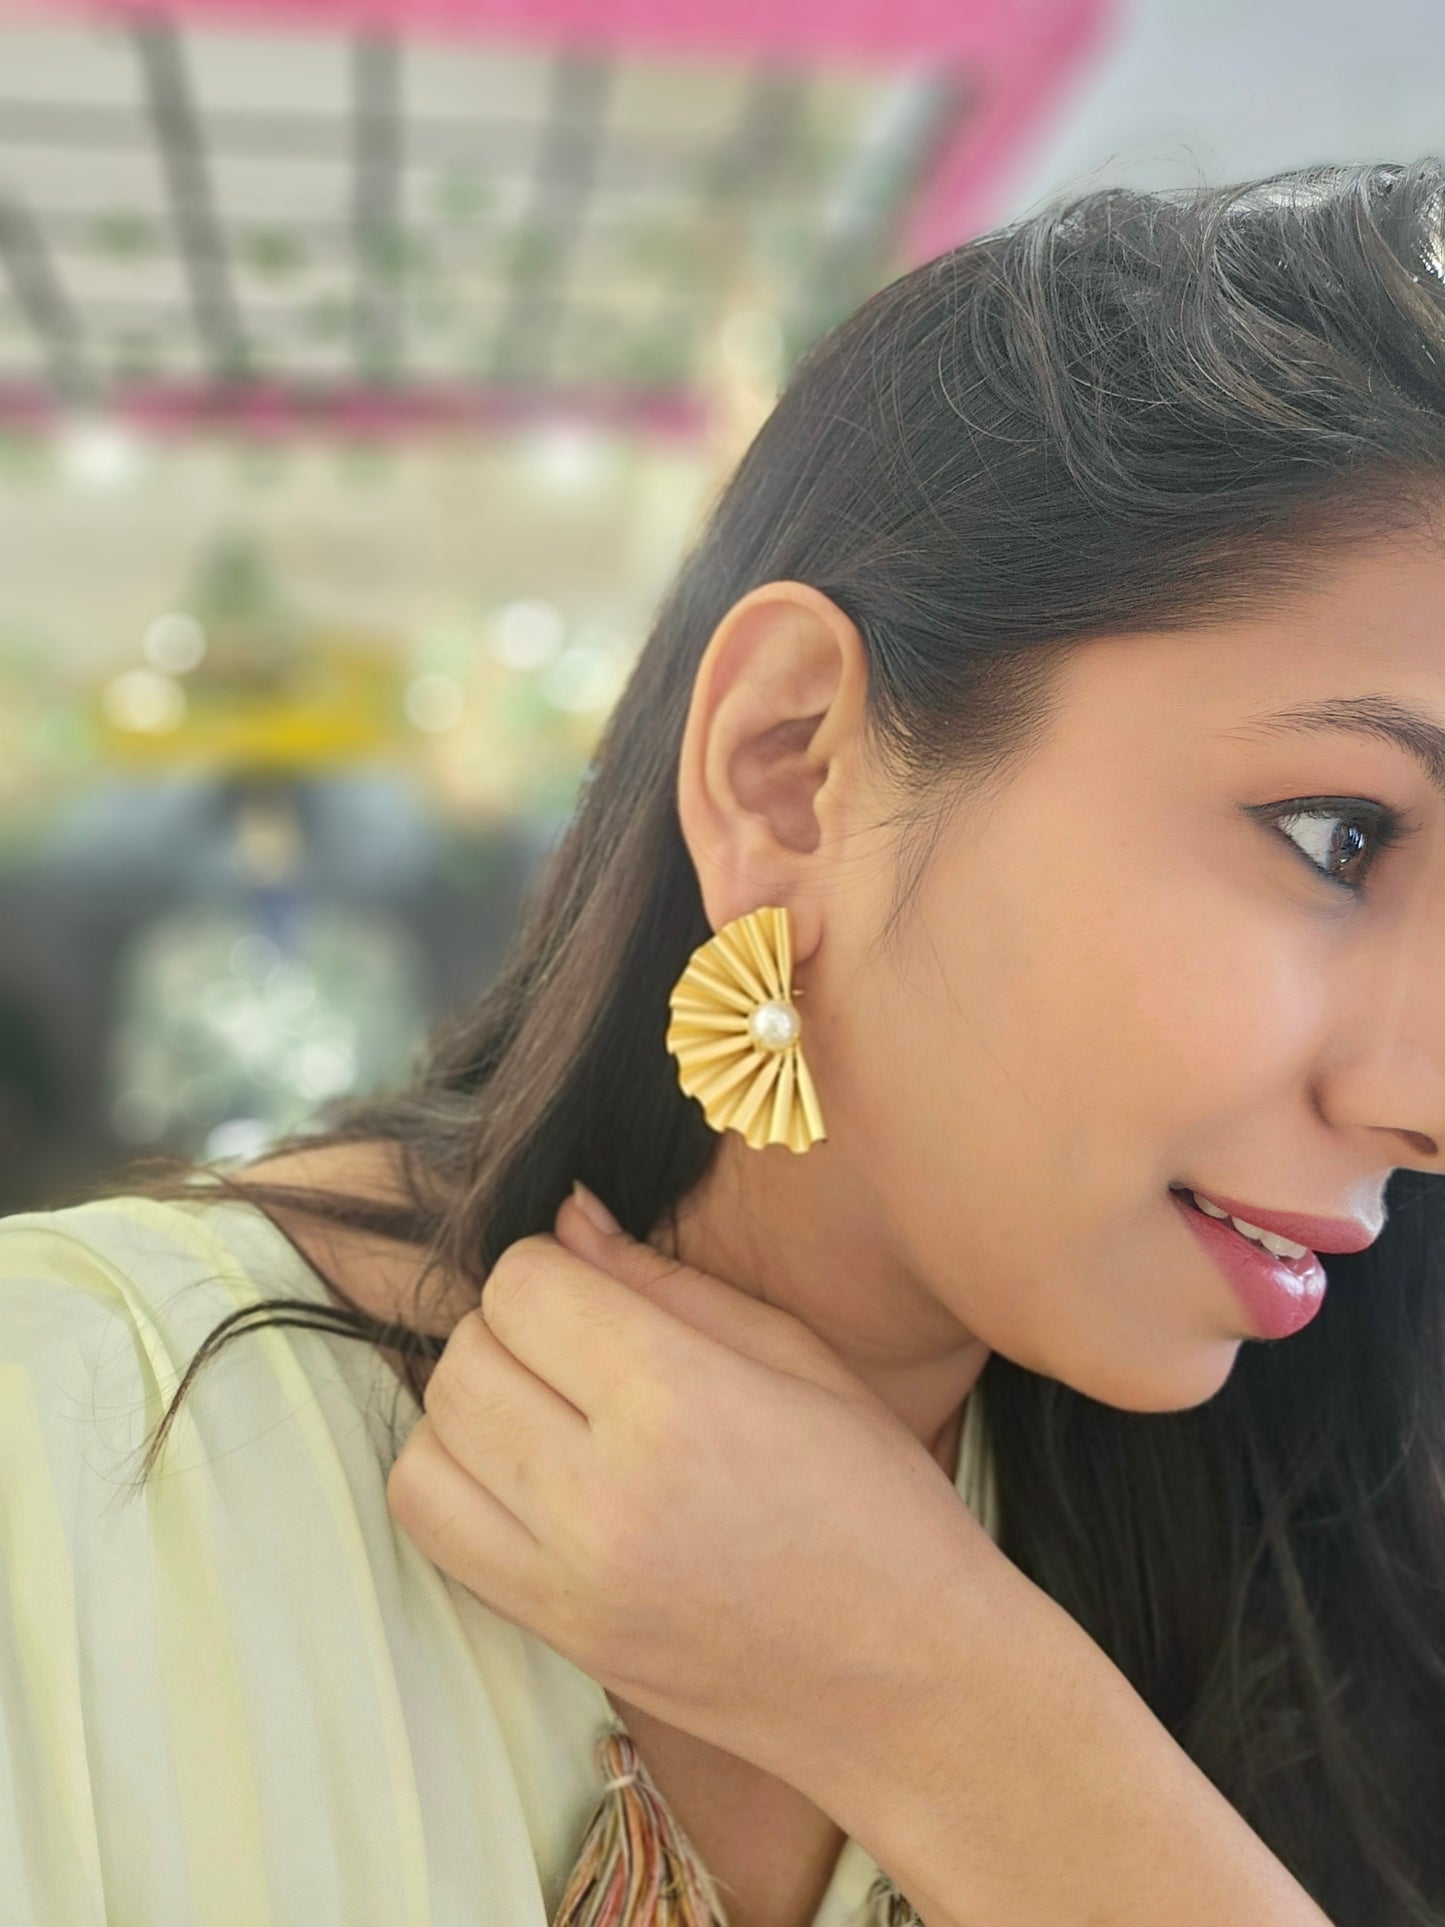 Golden Flower Earring